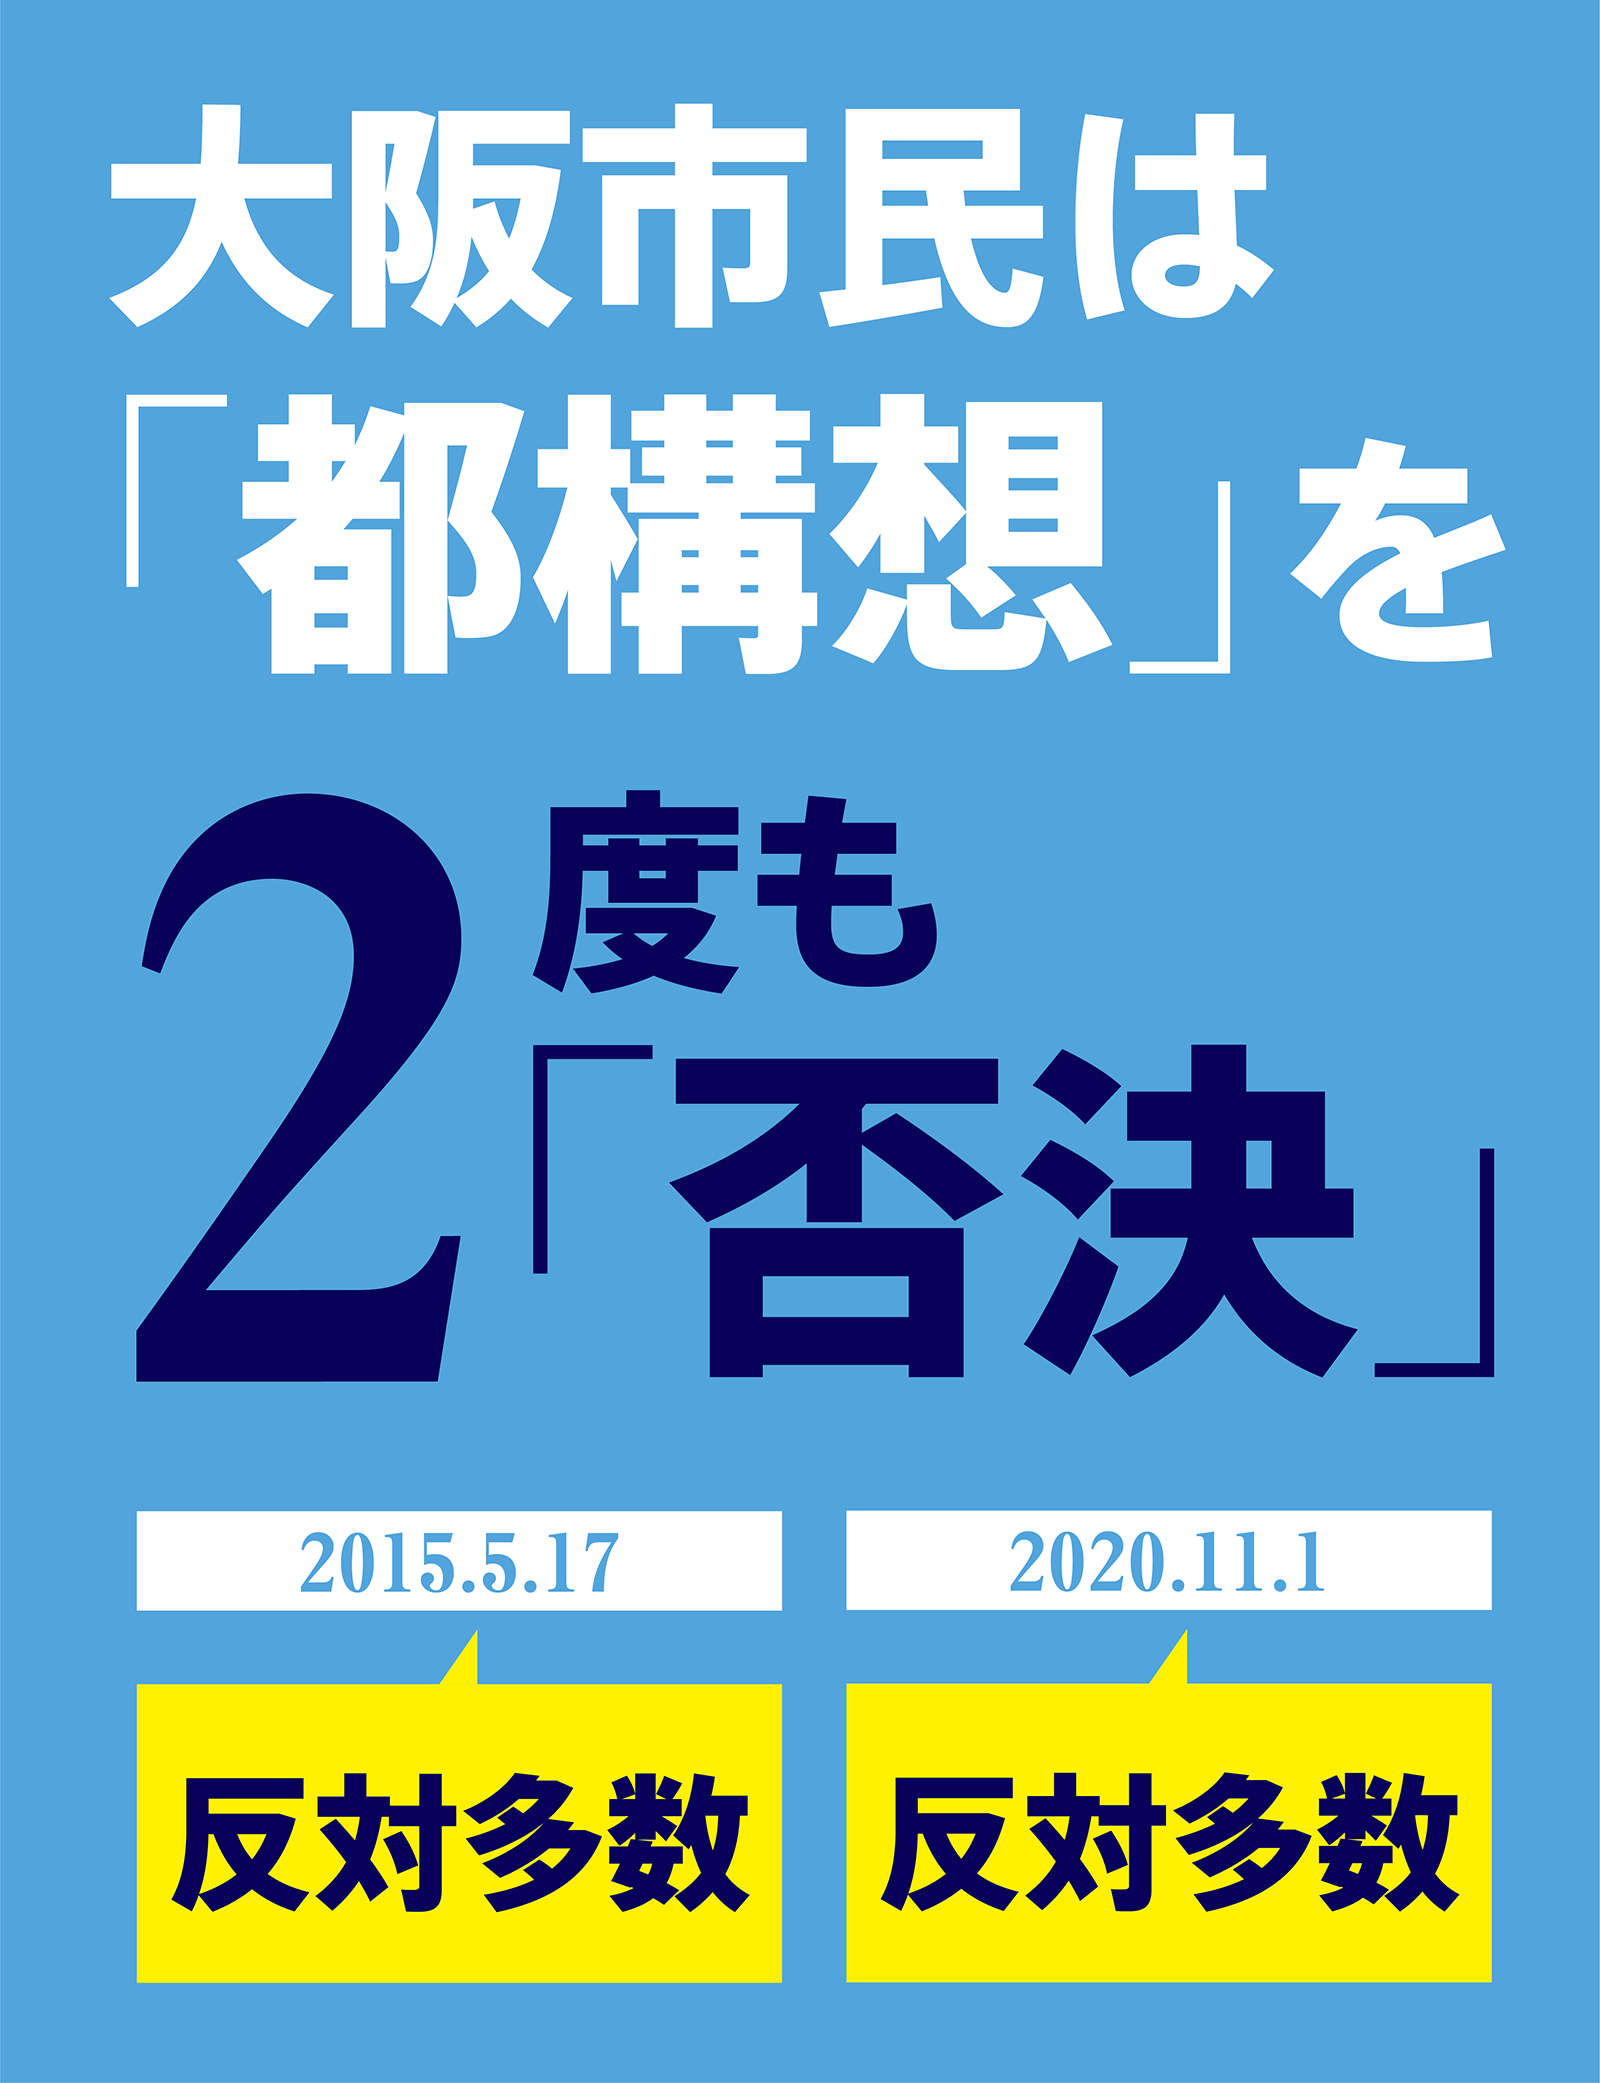 大阪市民は「都構想」を二度も否決しました。2015年5月17日と2020年11月1日の住民投票では反対多数でした。